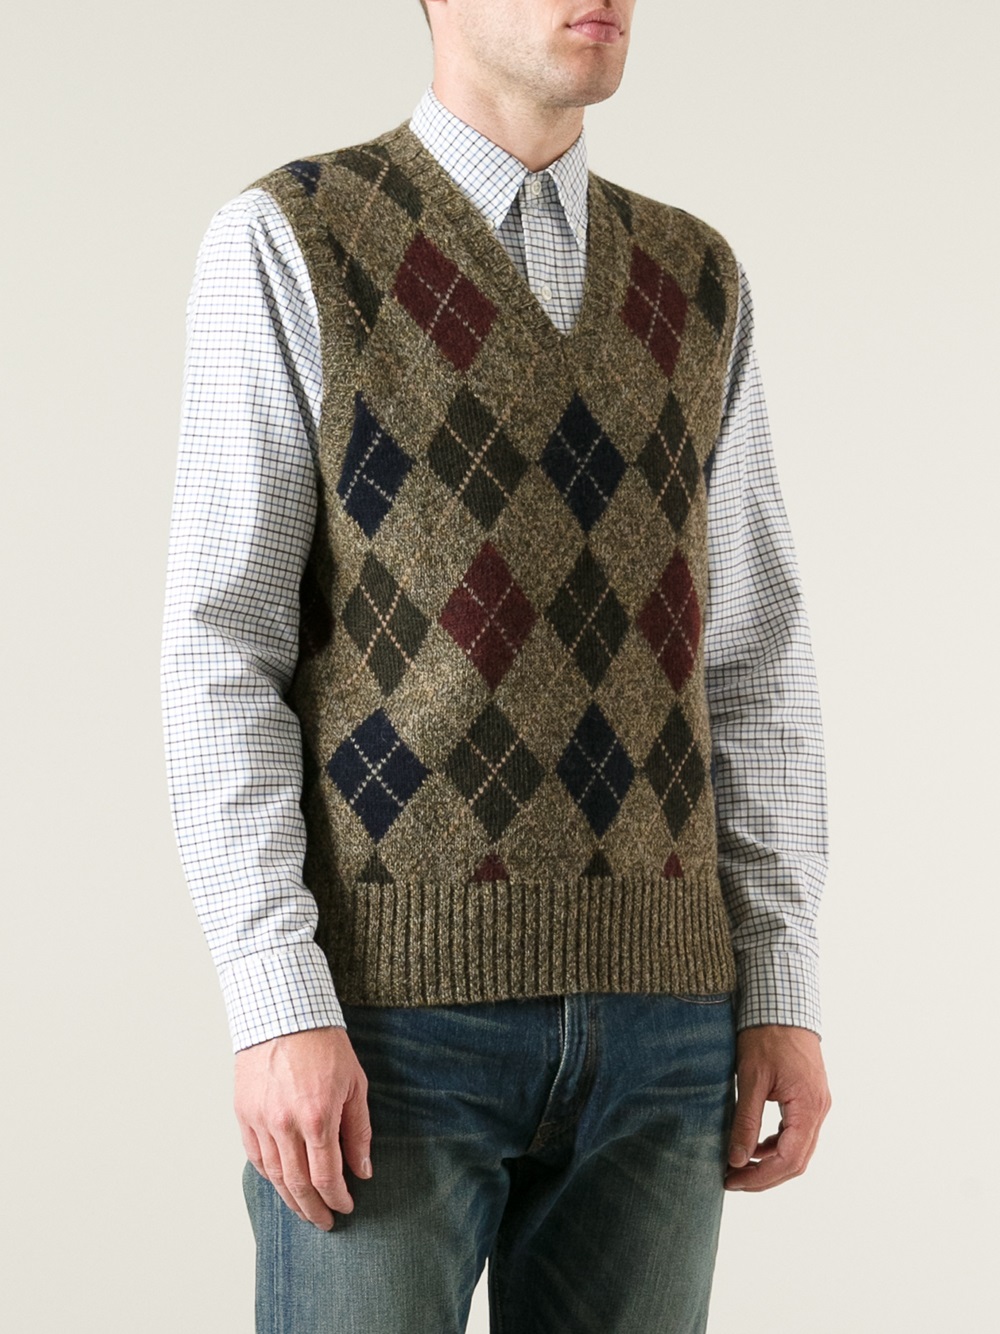 Polo Ralph Lauren Harlequin Sweater Vest in Brown for Men - Lyst